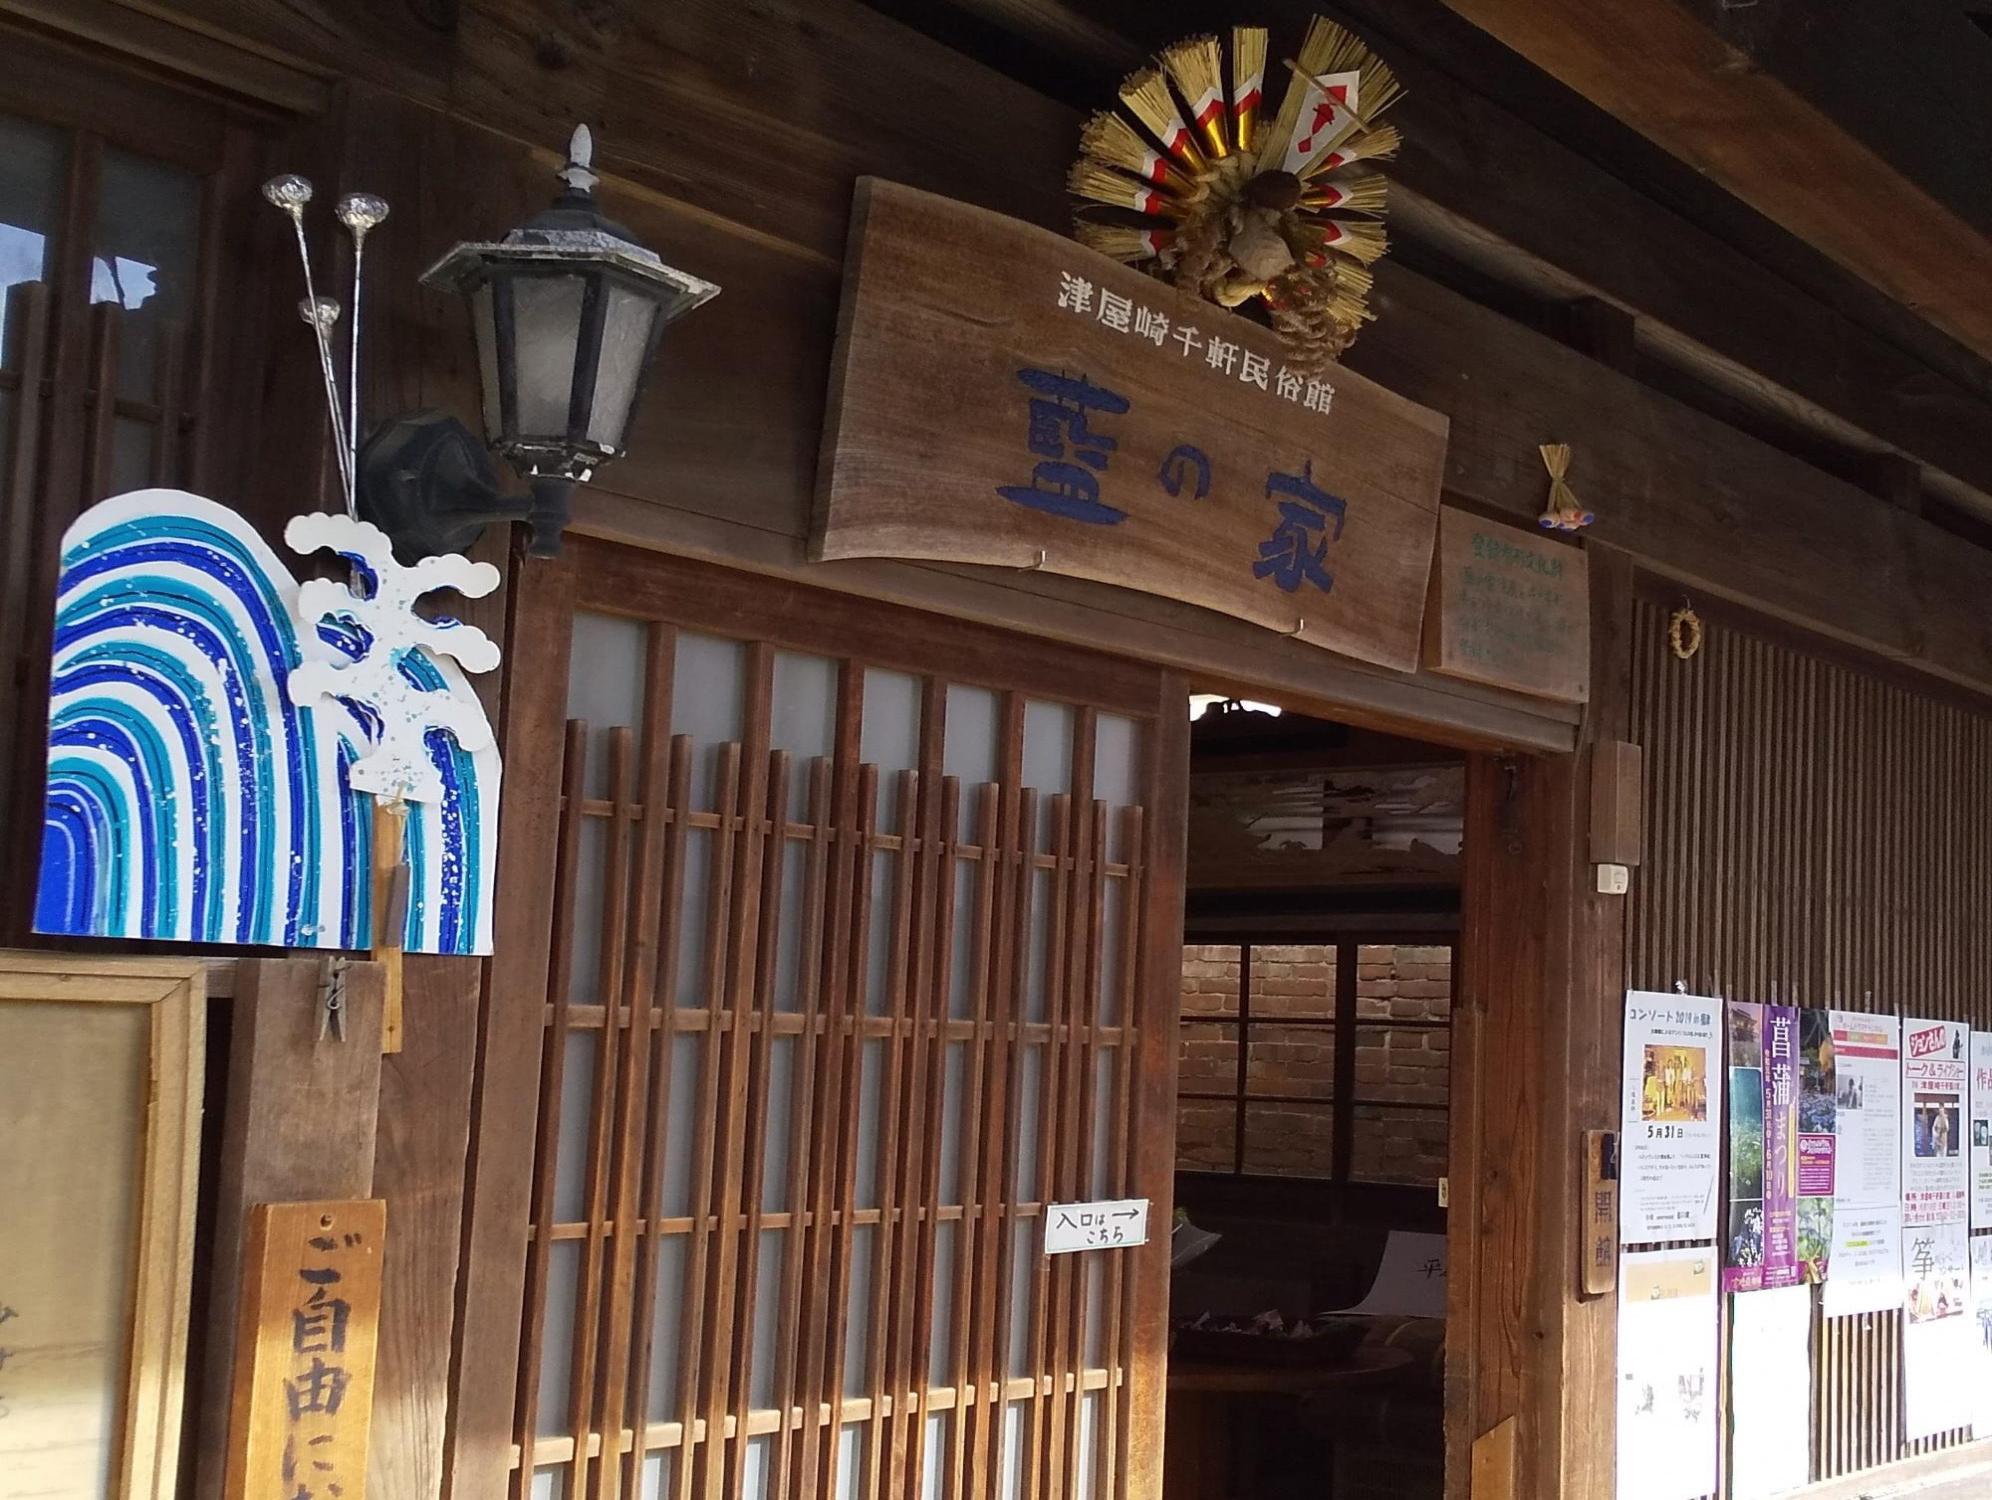 藍の家入口に飾られている「津屋崎千軒民俗館藍の家」と書かれた木製の看板の写真